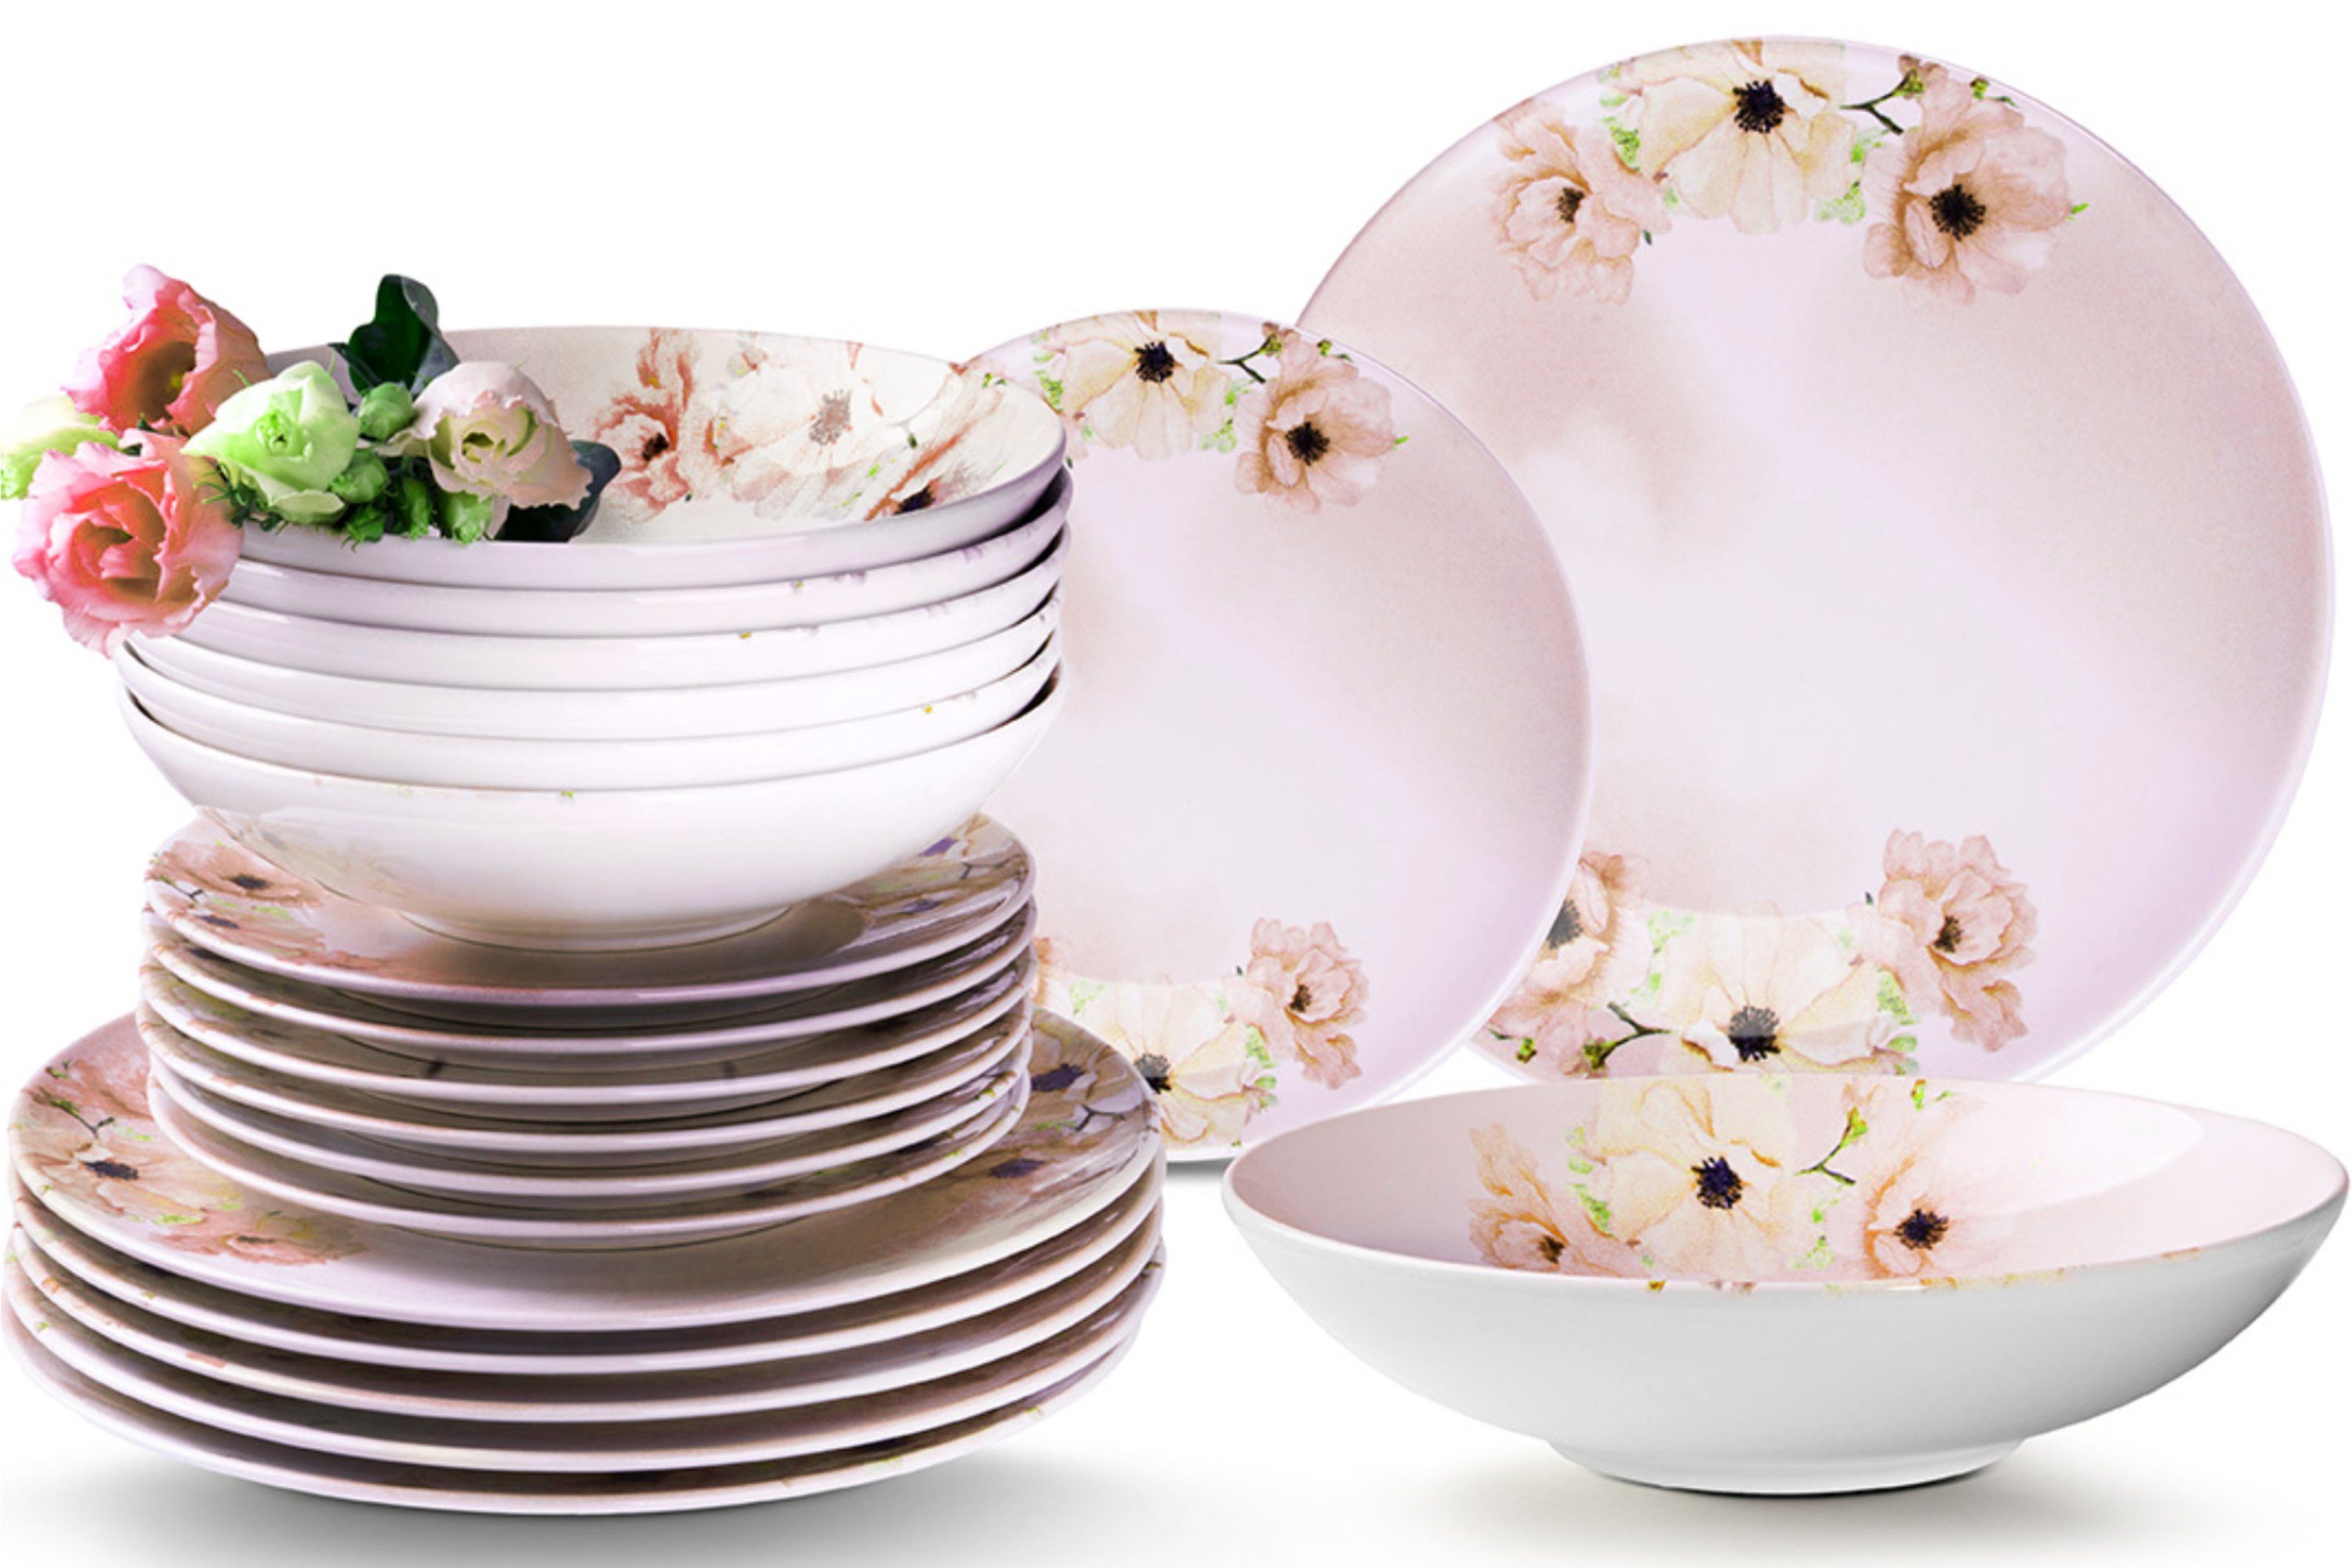 Konsimo Tafelservice Basima Geschirrset Dessertteller Speiseteller rosa/weiß  6 Personen (36-tlg), 6 Personen, Keramik, Spülmaschinen- und  Mikrowellengeeignet, rund